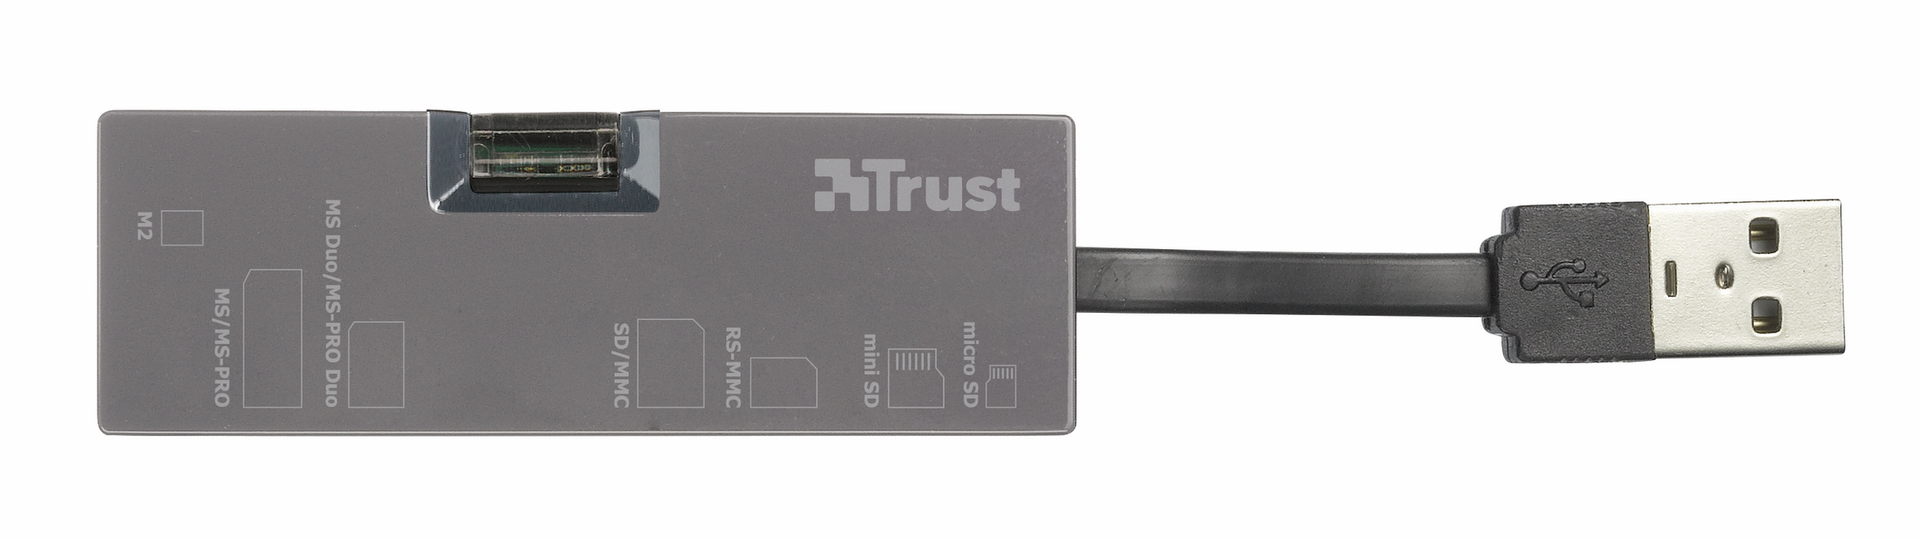 USB cardreader - mini-Top